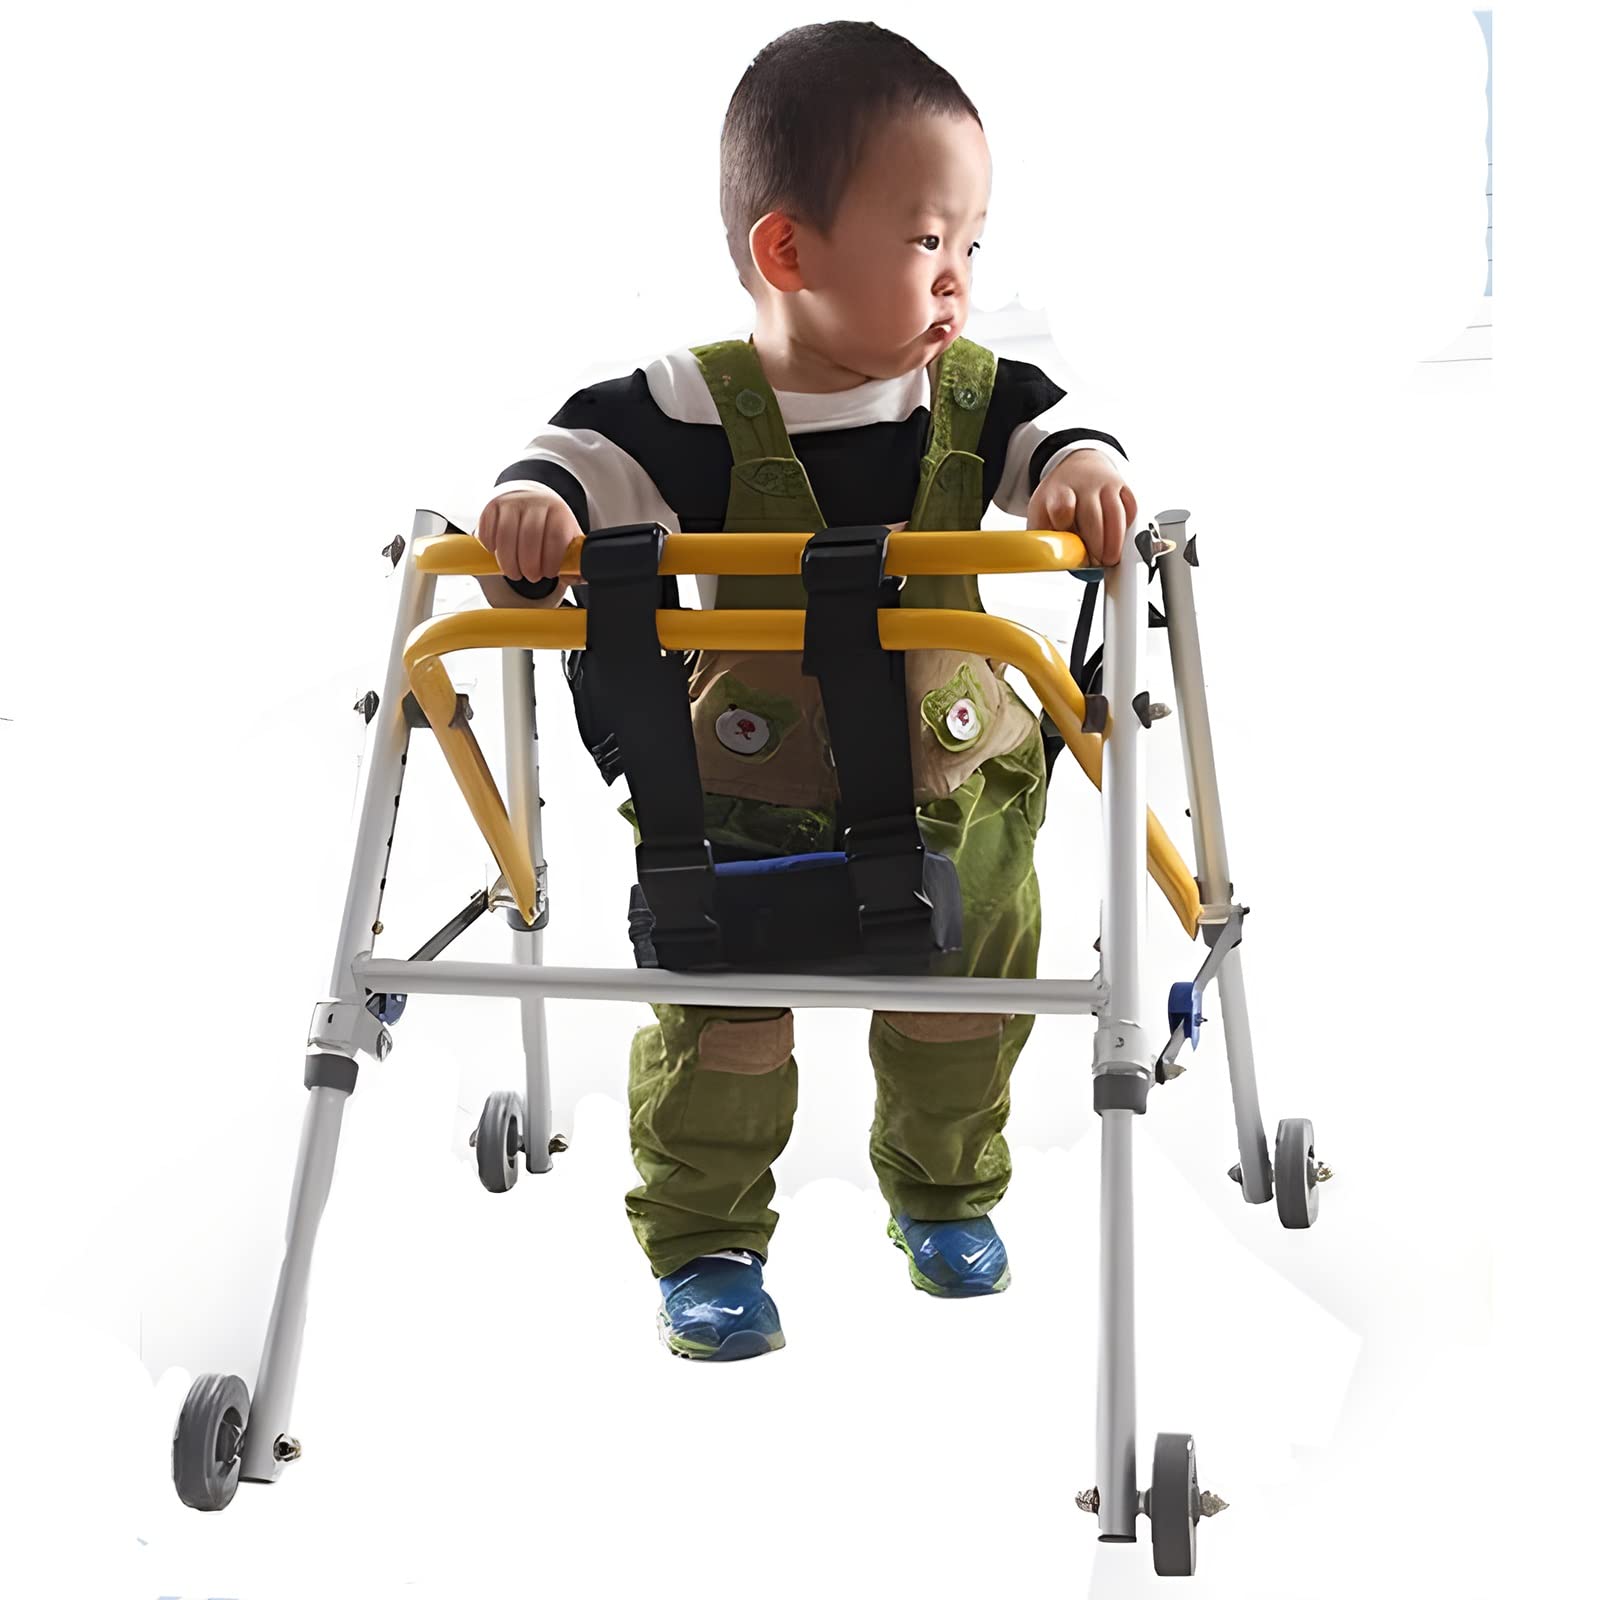 Robuster Rollator für Kinder mit Sitz und Rädern für Kinder mit Zerebralparese, faltbarer Rollator aus Metall für das Rehabilitationstraining der unteren Gliedmaßen (Größe: L) Dekoration